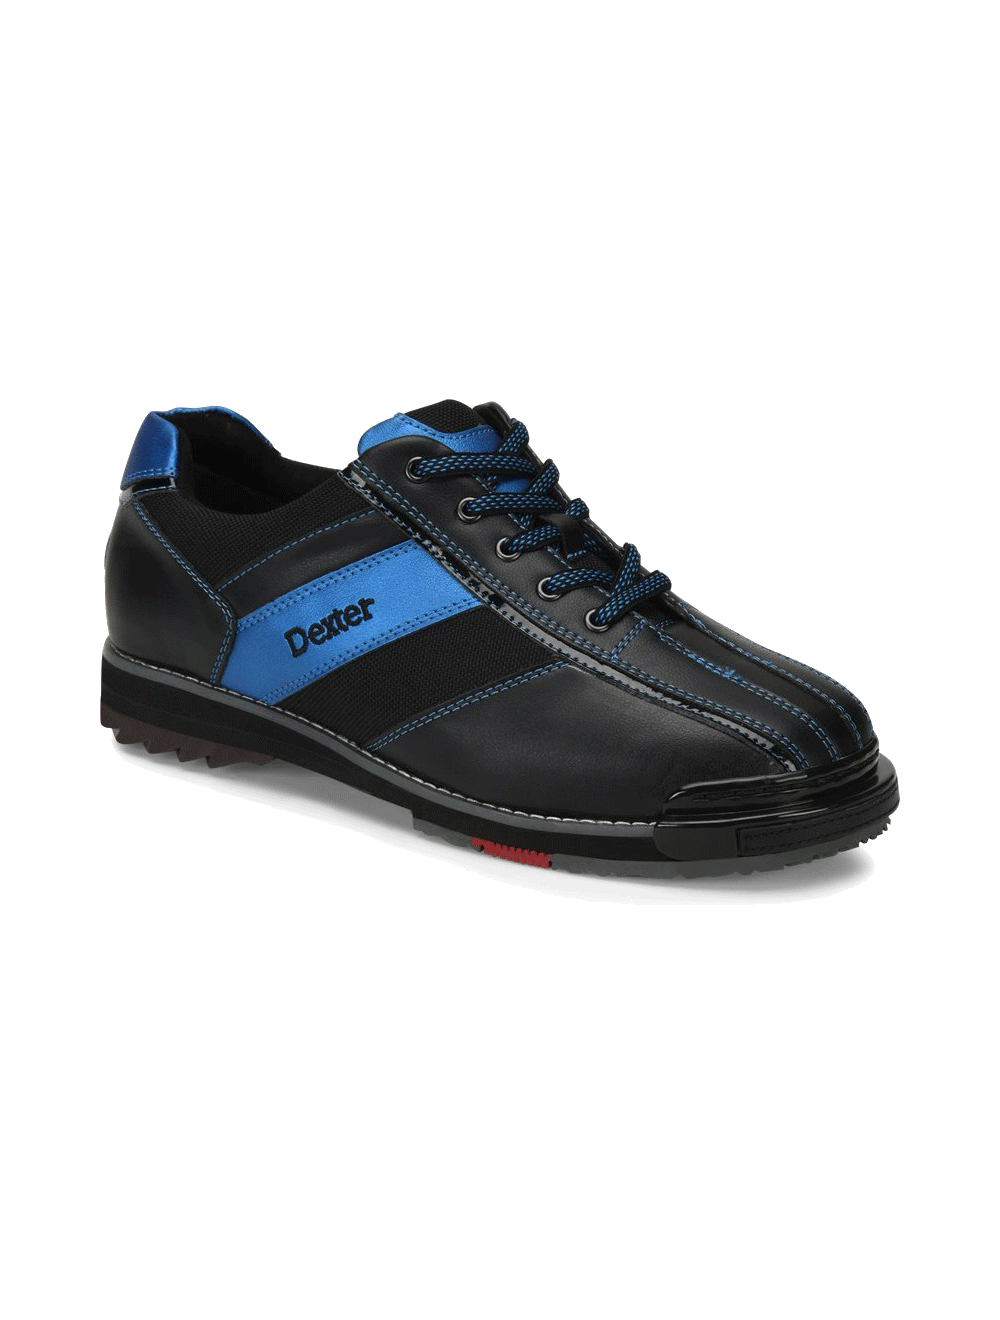 Dexter SST 8 Pro Black//Blue Mens Bowling Shoes